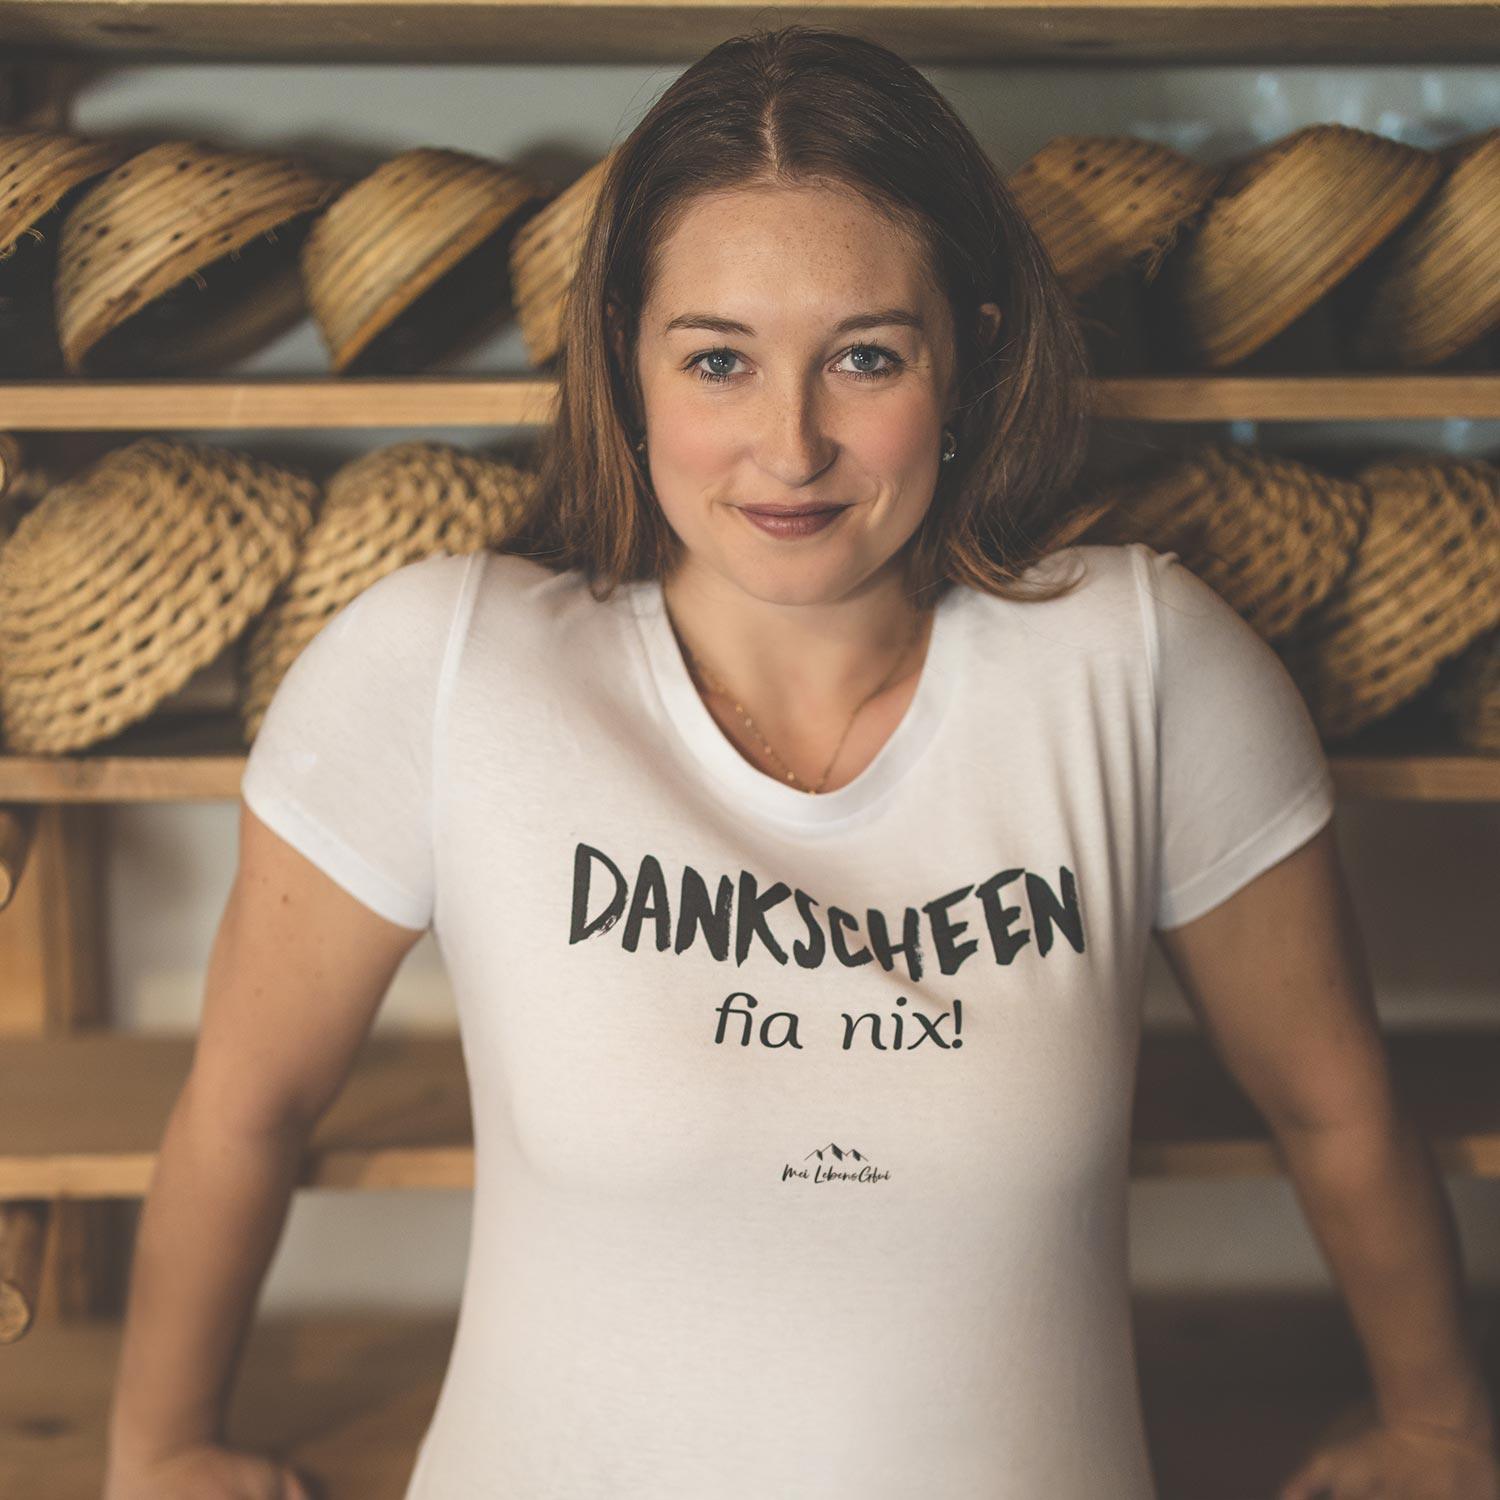 Damen T-Shirt "Dankscheen - fia nix!" - bavariashop - mei LebensGfui